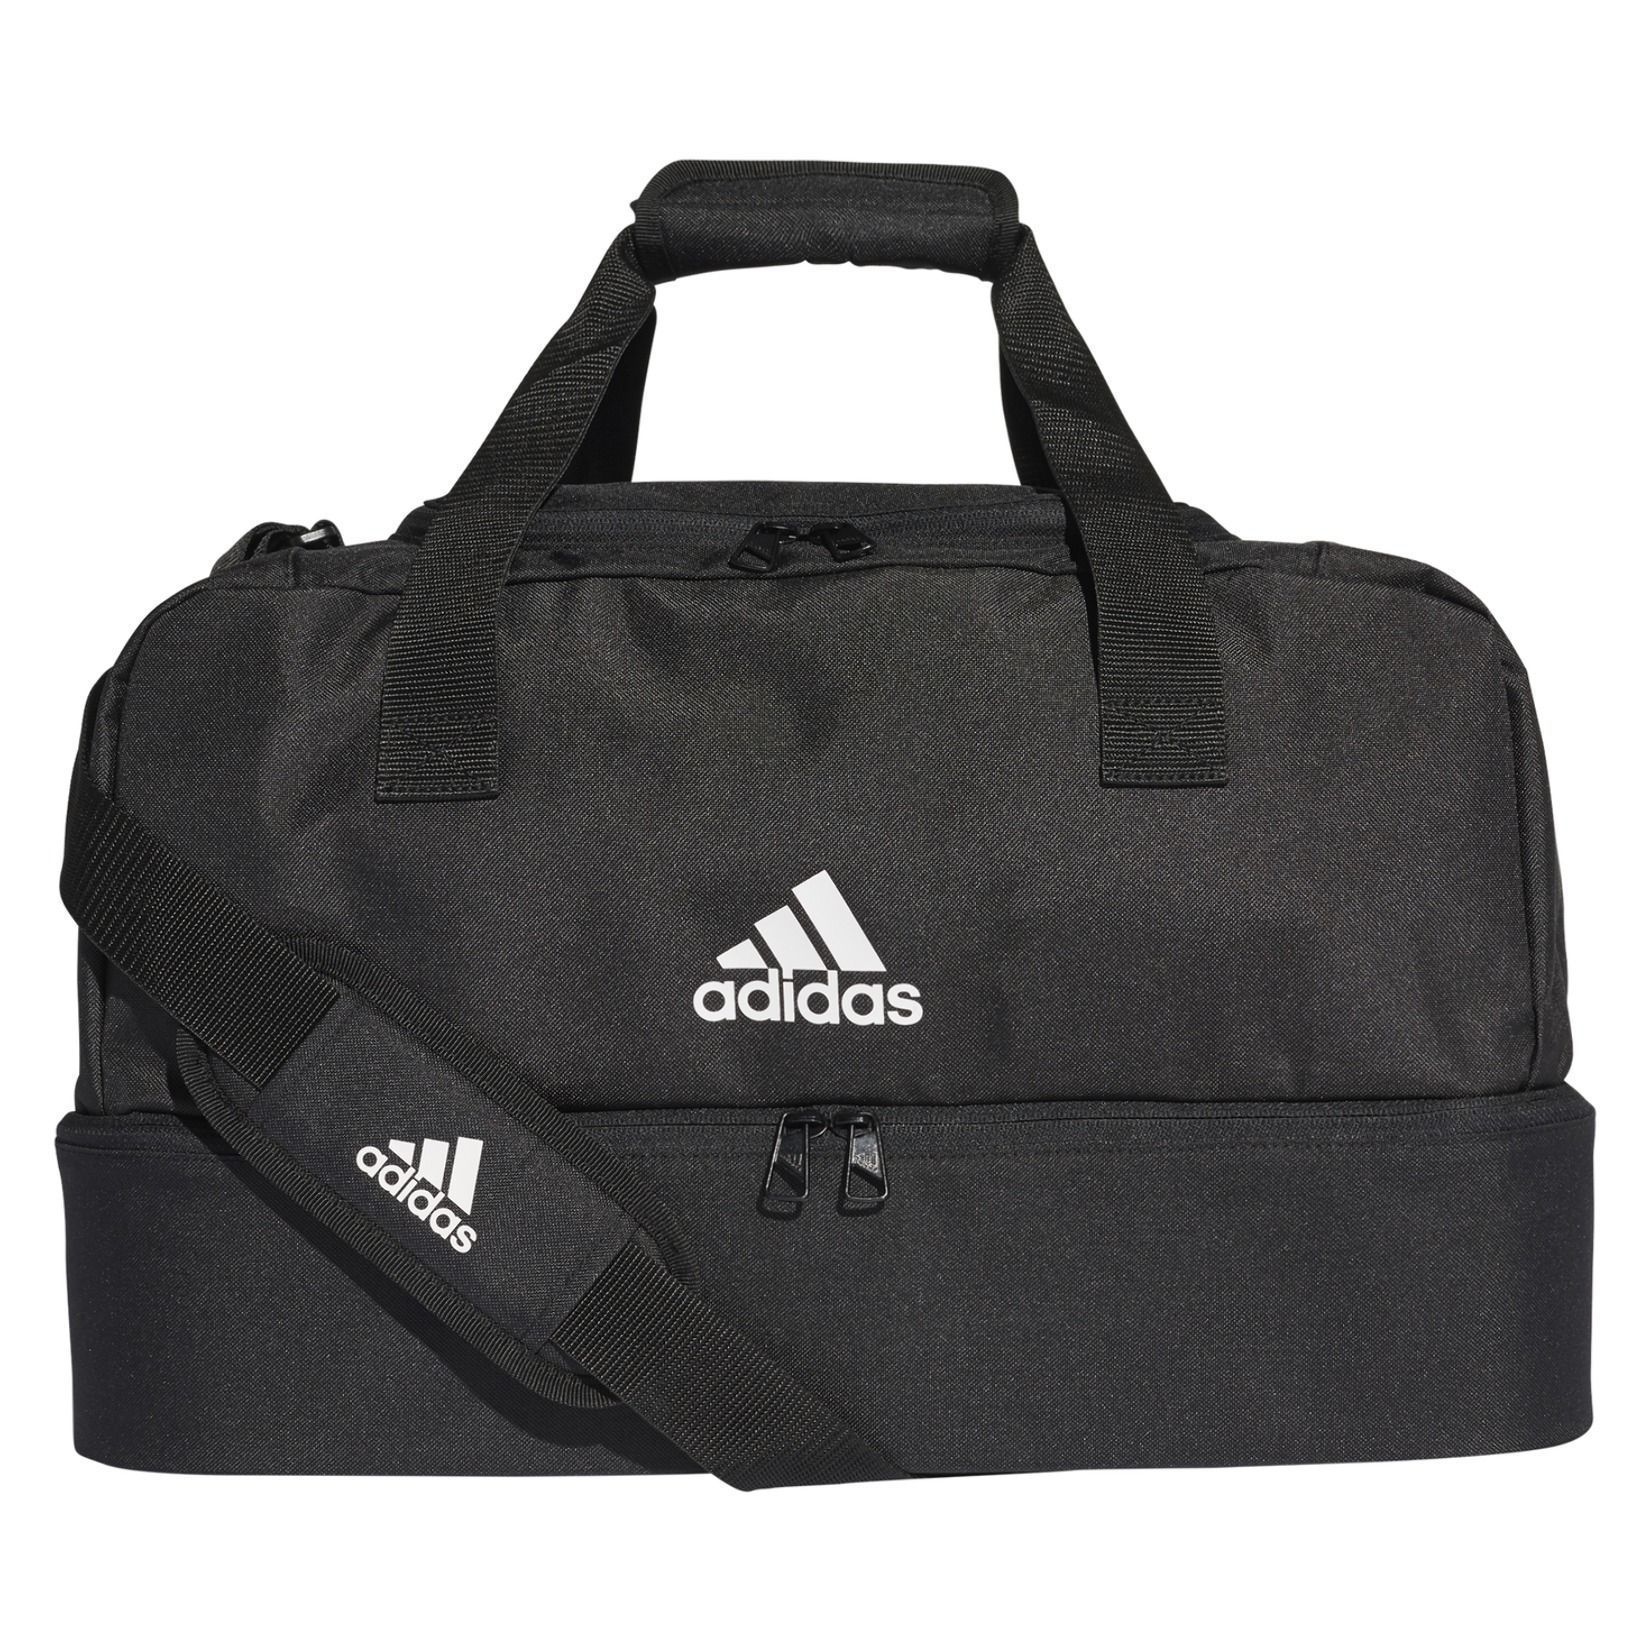 adidas Bottom Compartment Bag - Small - Kitlocker.com